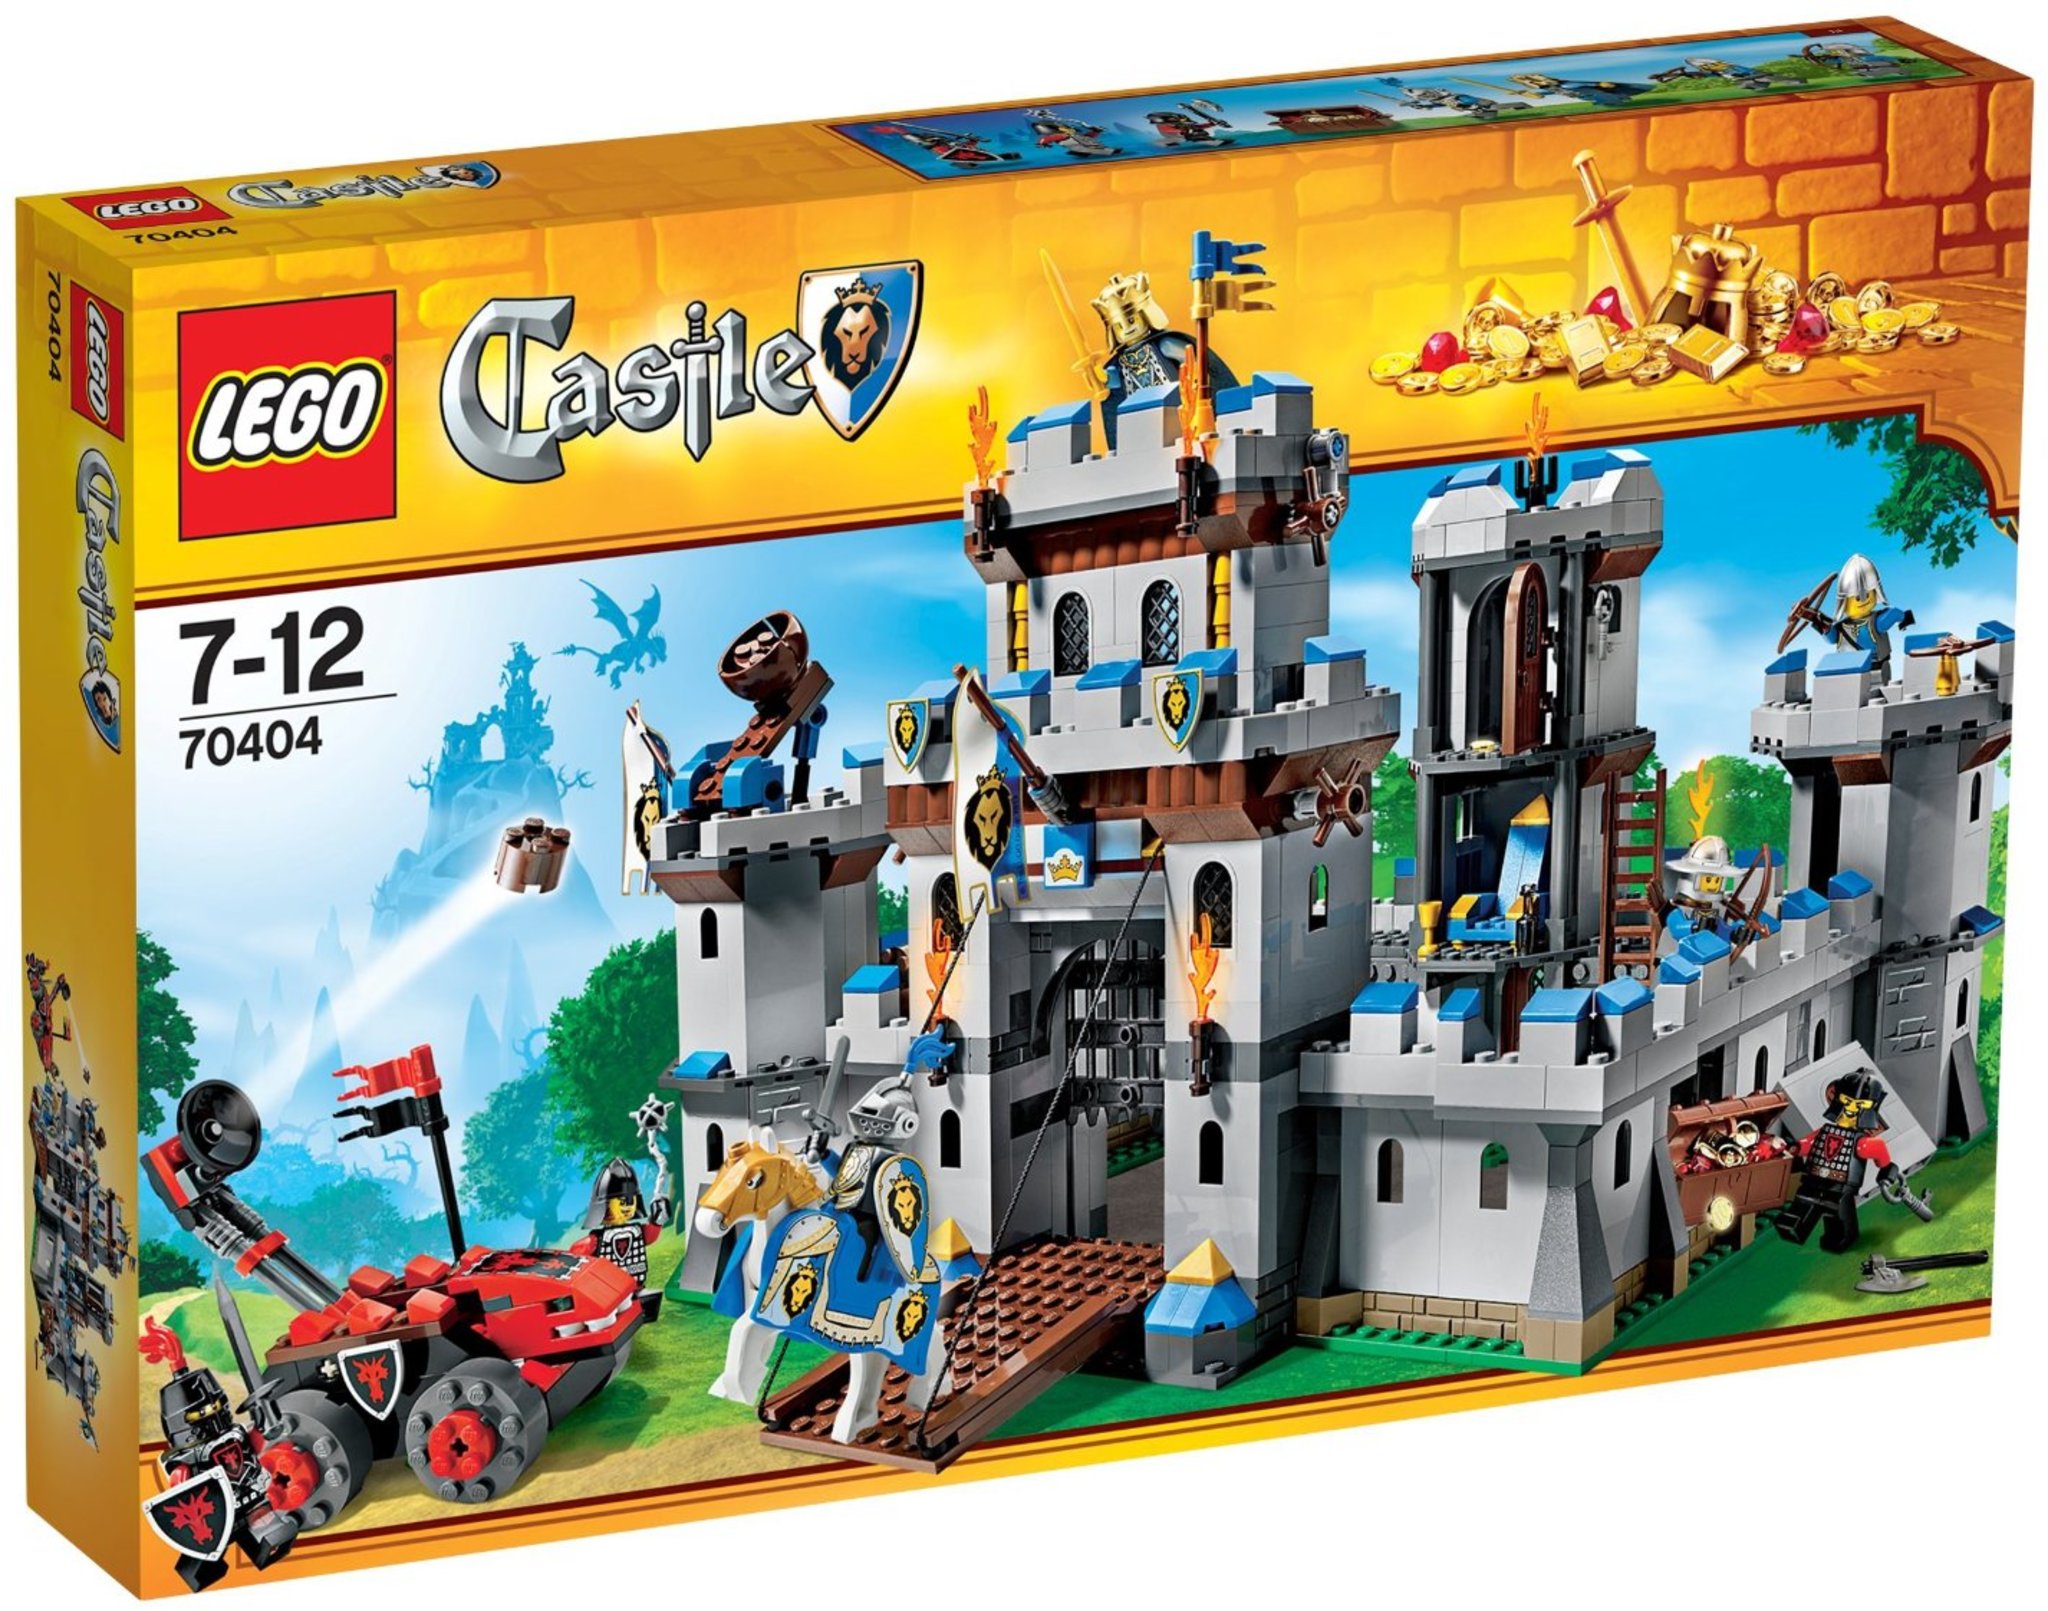 LEGO Castle 70404 - Castello Del Re